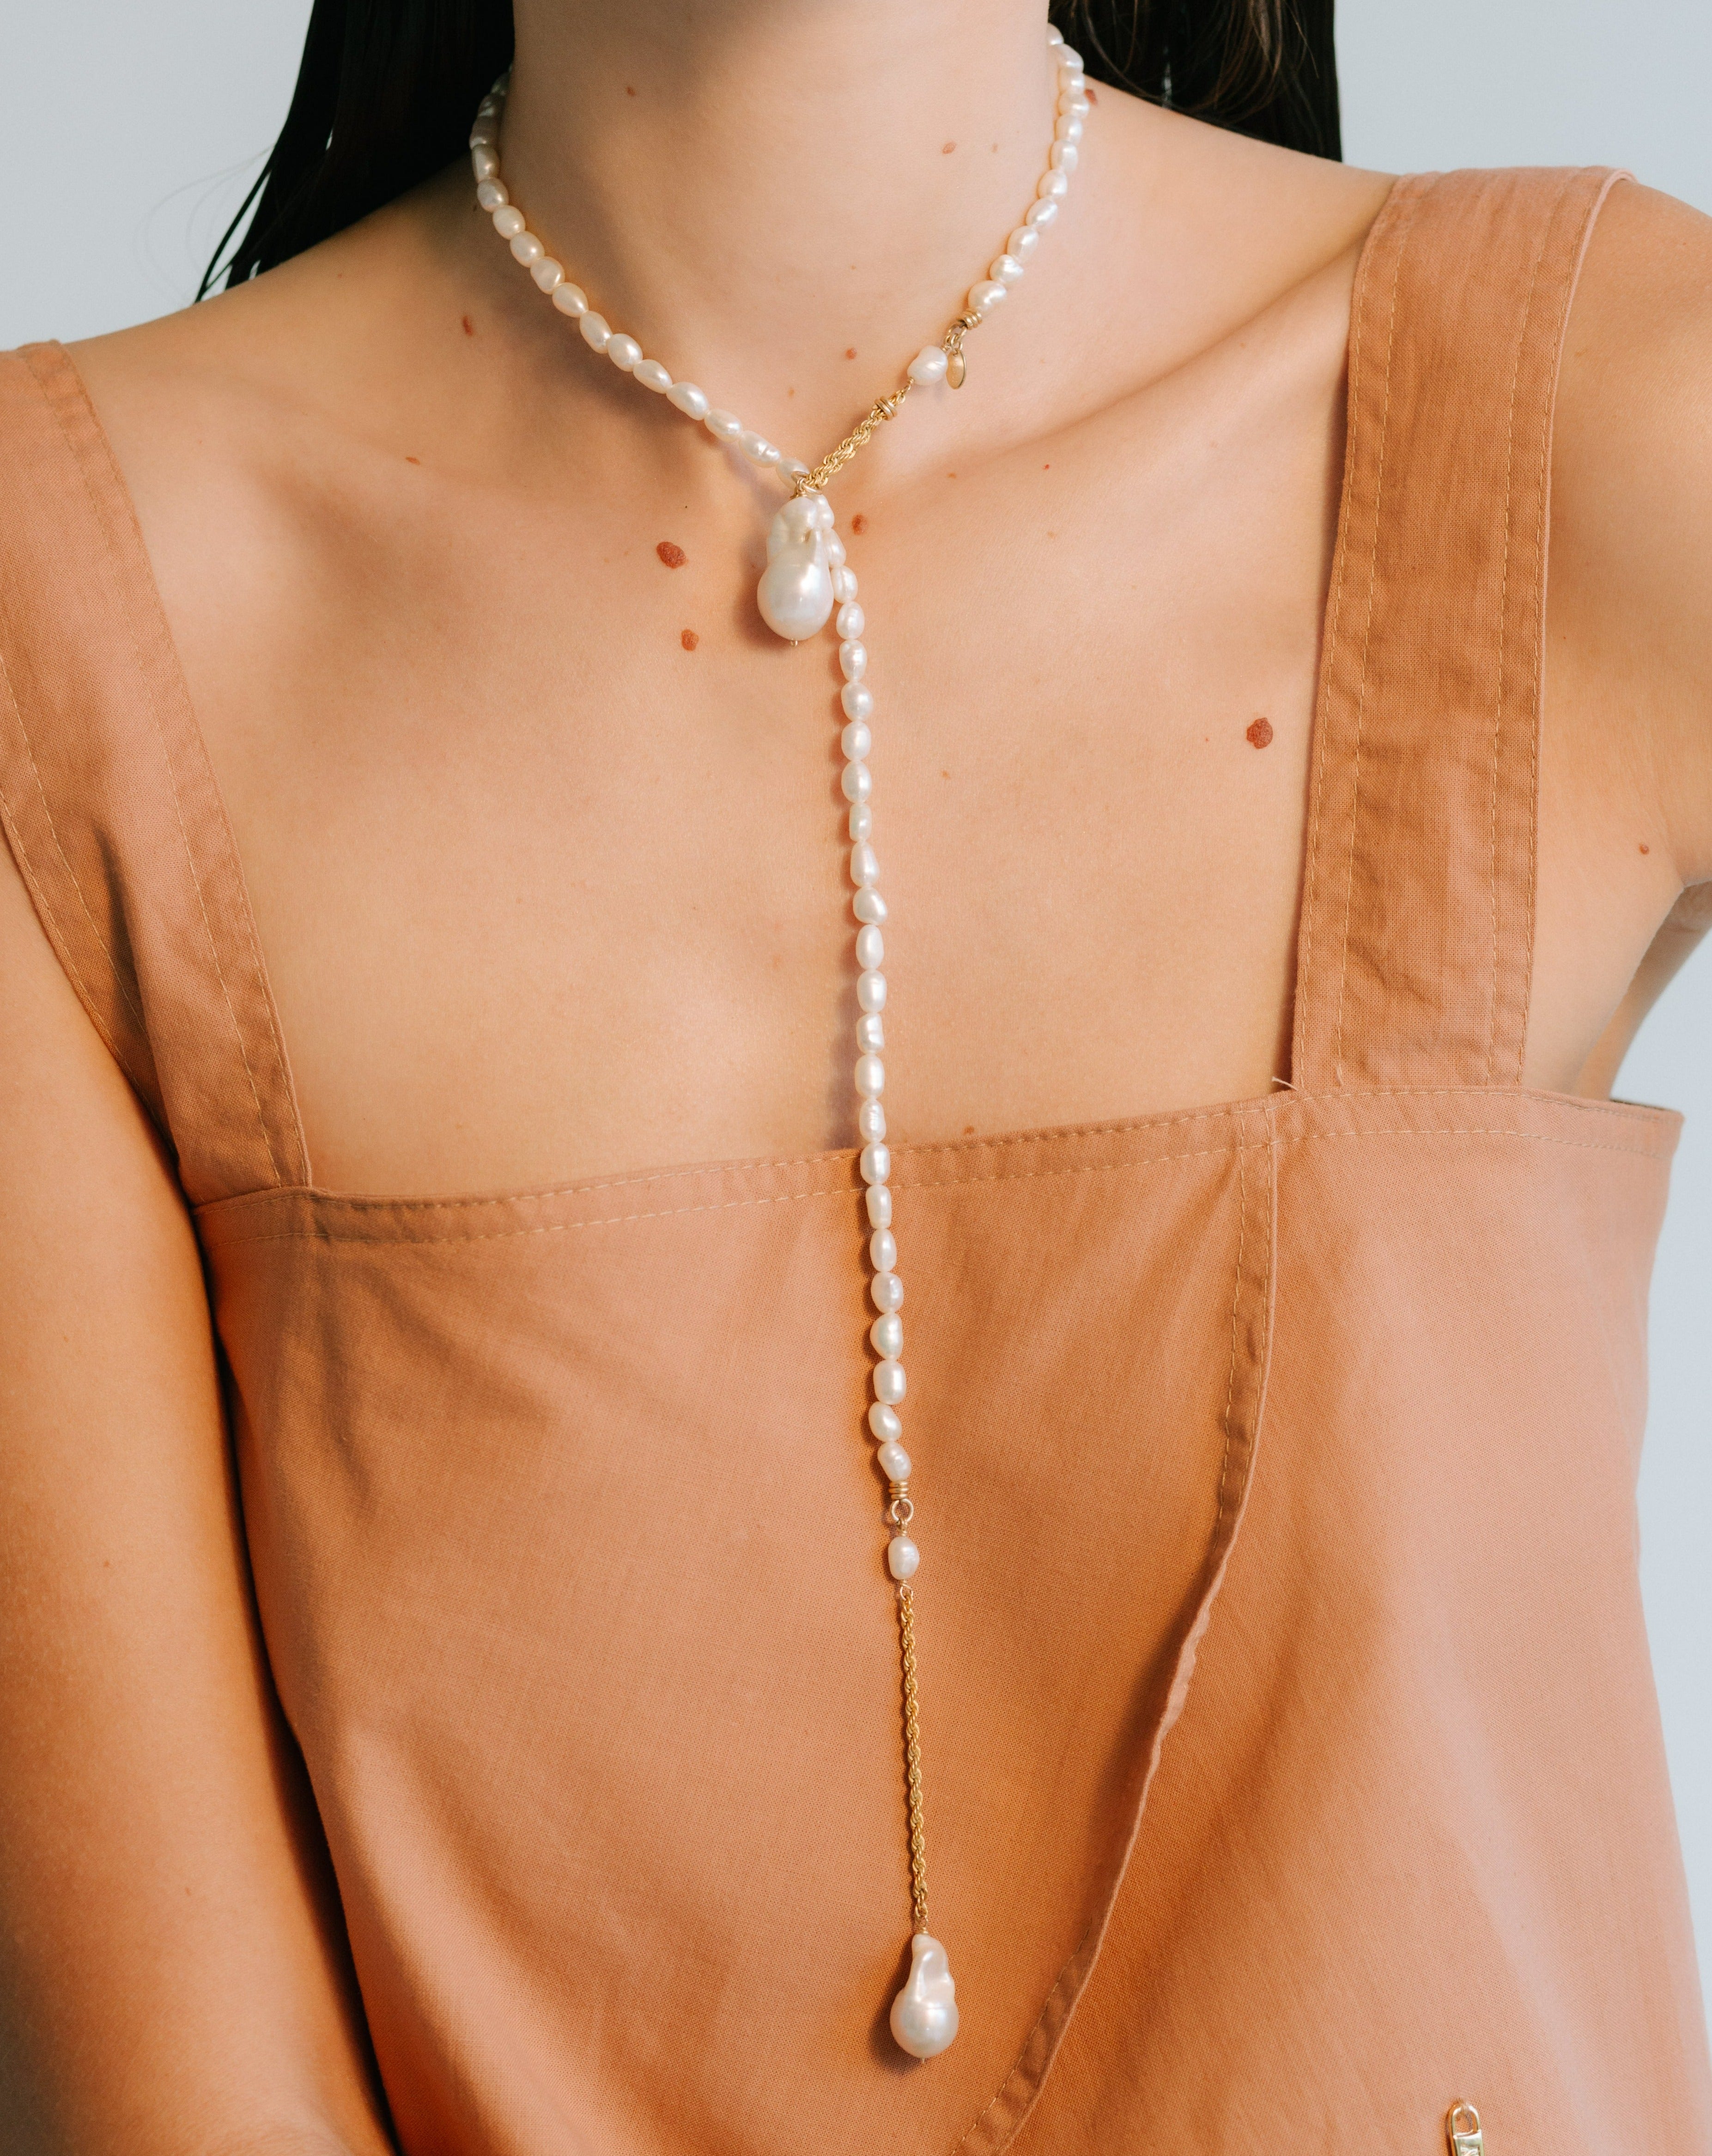 Barroca Necklace #4 - Pearl Necklaces TARBAY   